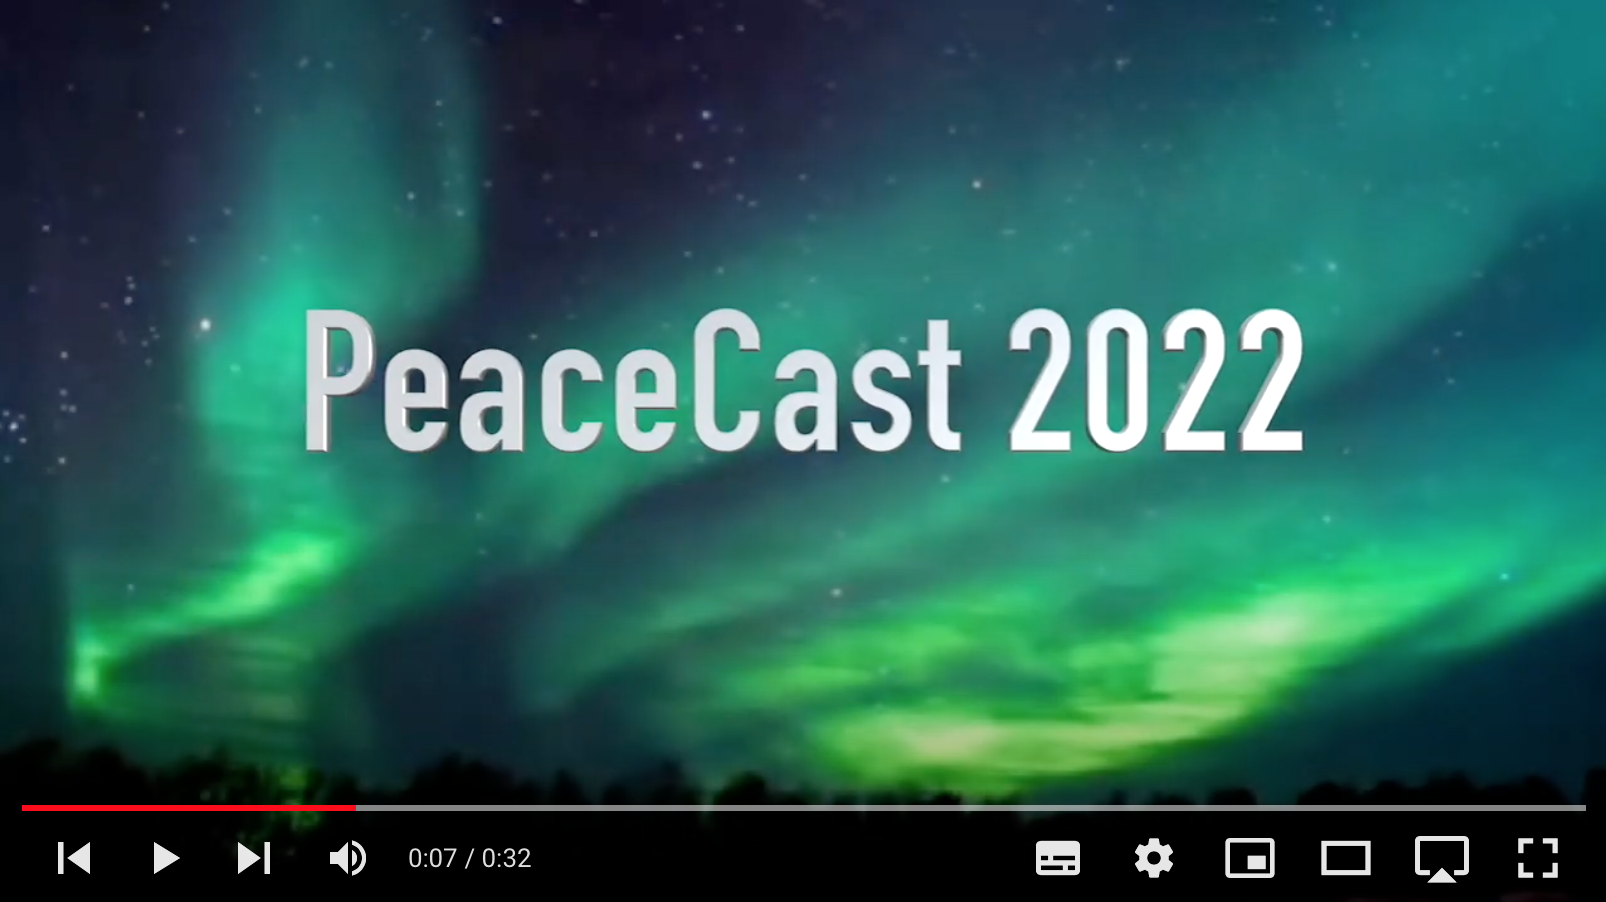 PeaceCast TV 2022